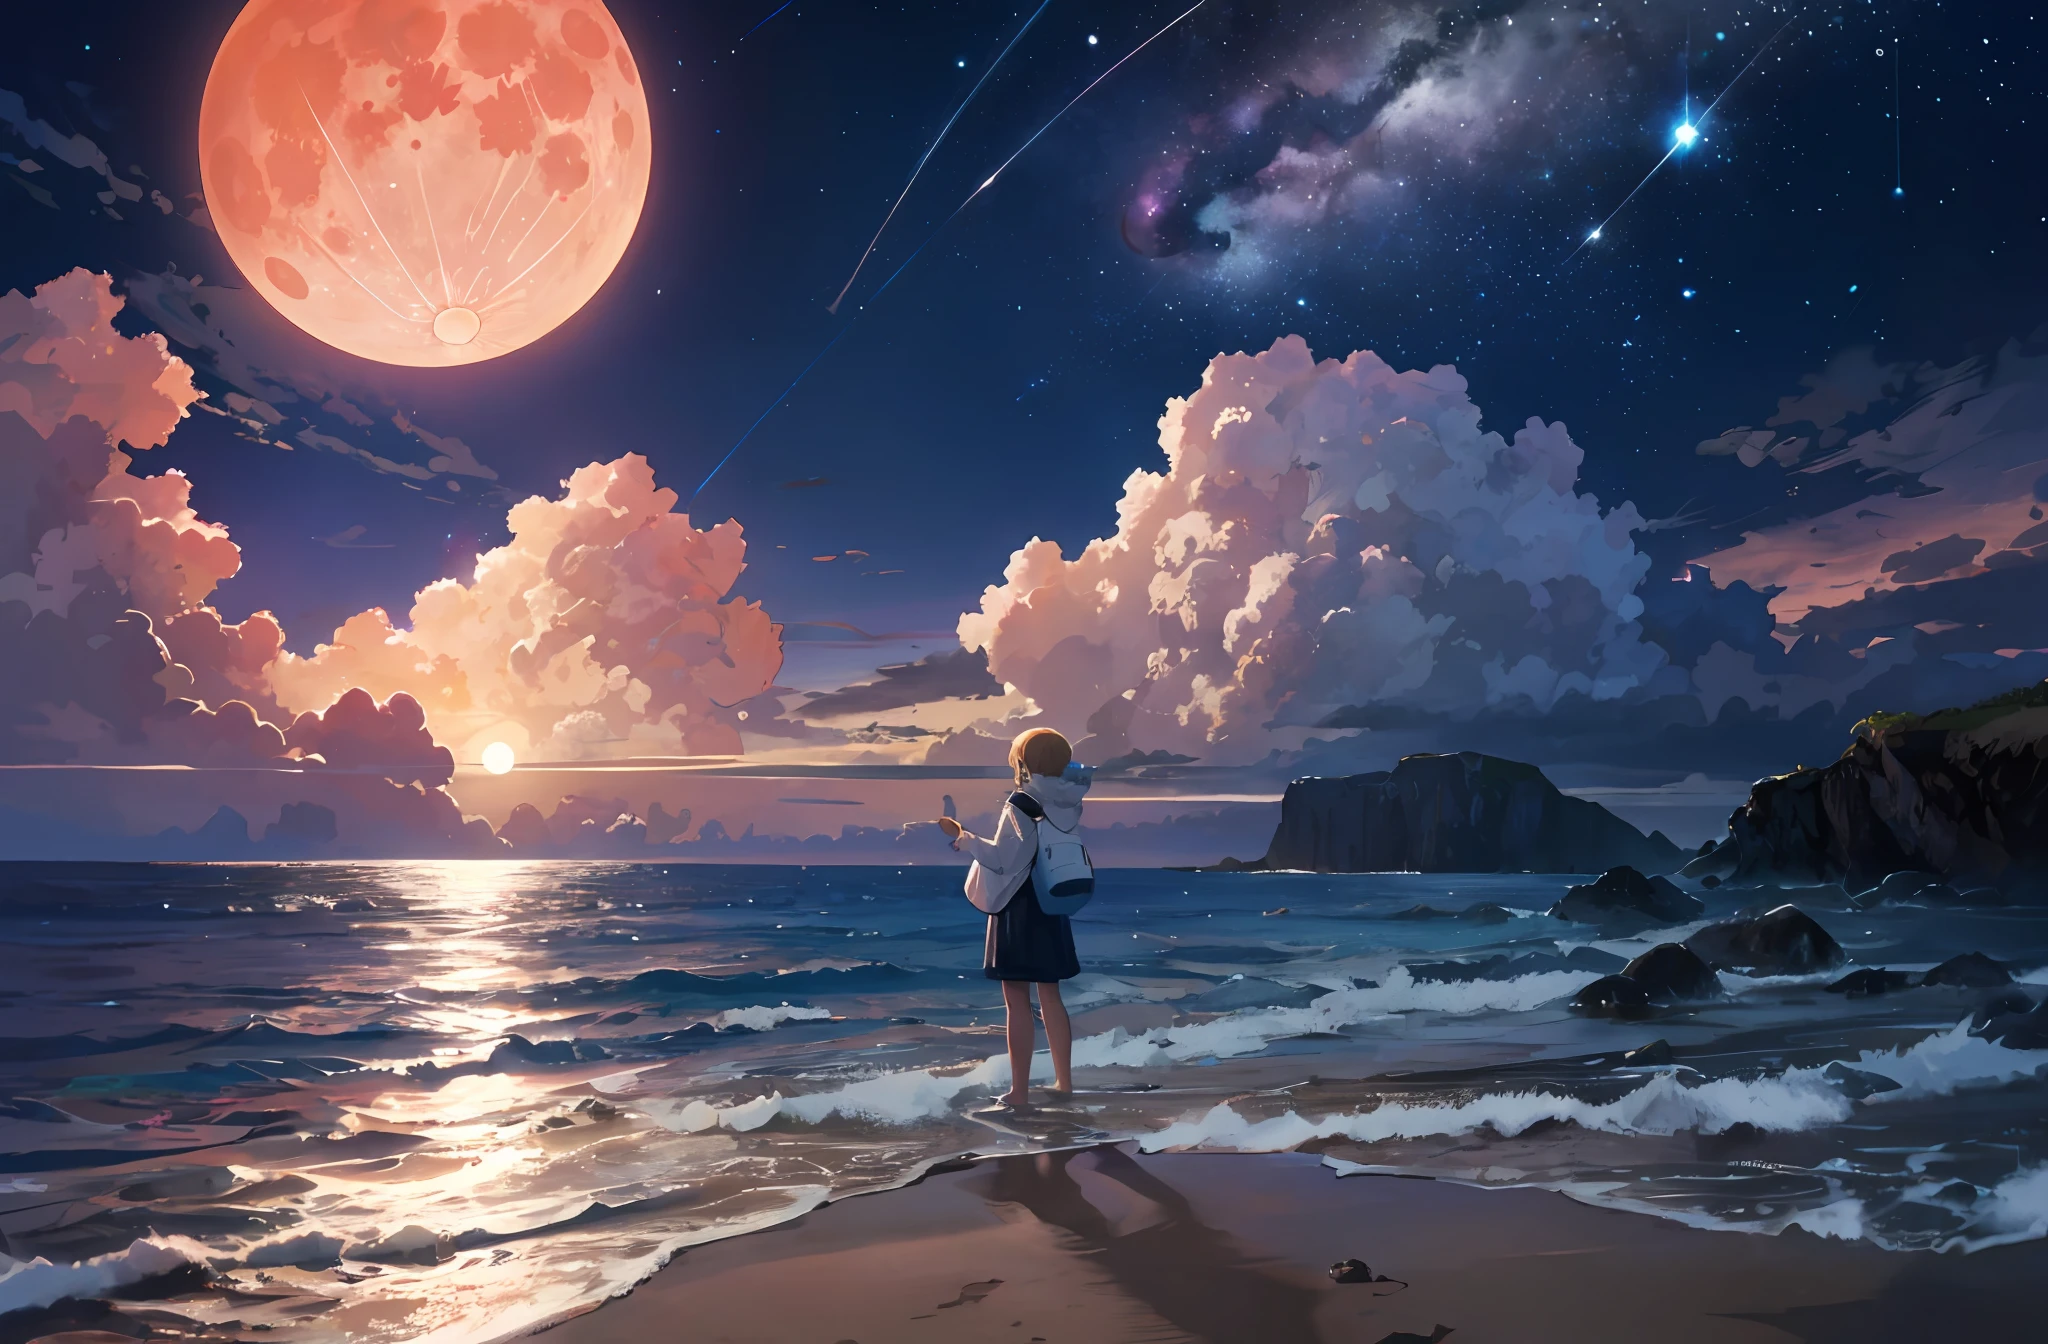 风景照片 (从下面看, 天空, 下面的海), 站在沙滩上仰望的女孩 (满月: 5.0), (流星: 0.9), (星云: 1.3), 天空中有许多不同的行星.